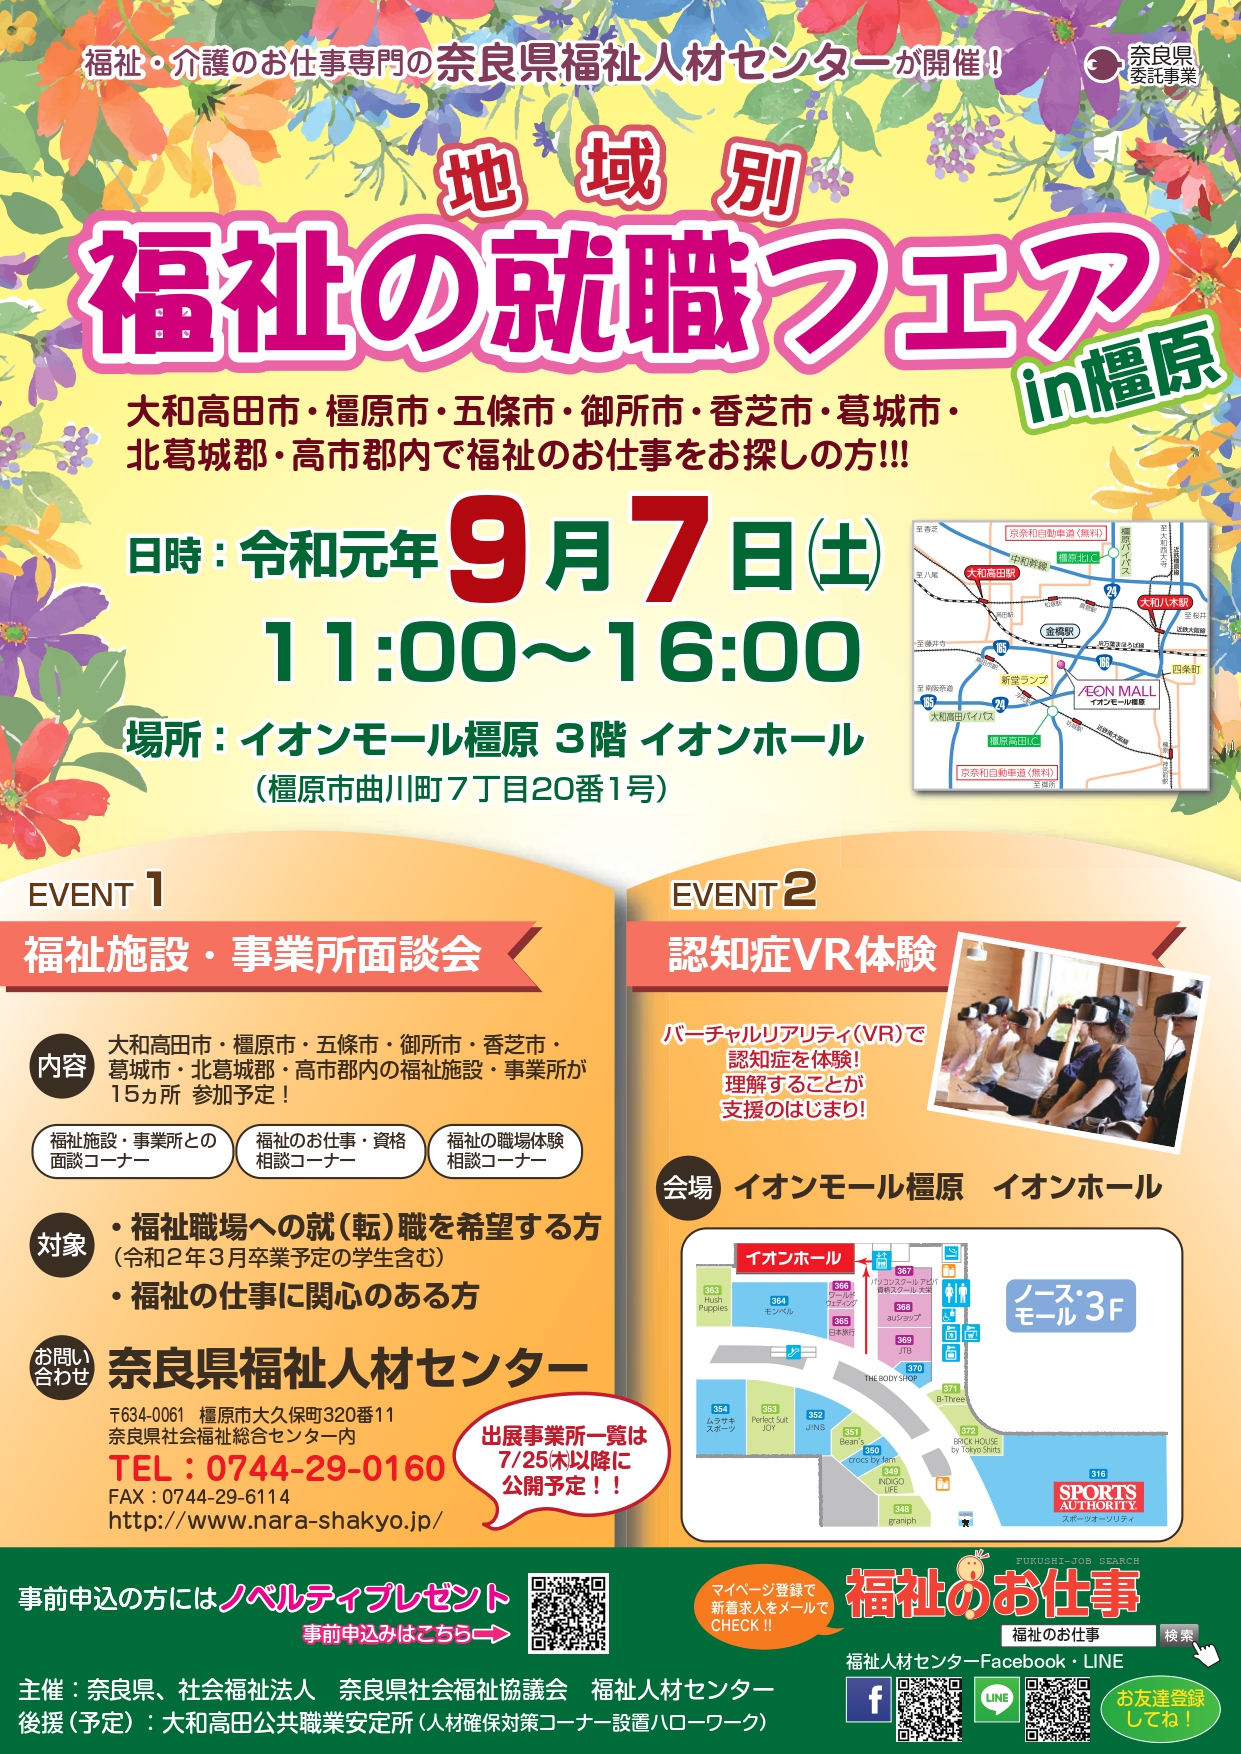 2019年、イベント、奈良県、橿原市、9月、参加型イベント、体験、イオンモール橿原、地域別福祉の就職フェア。